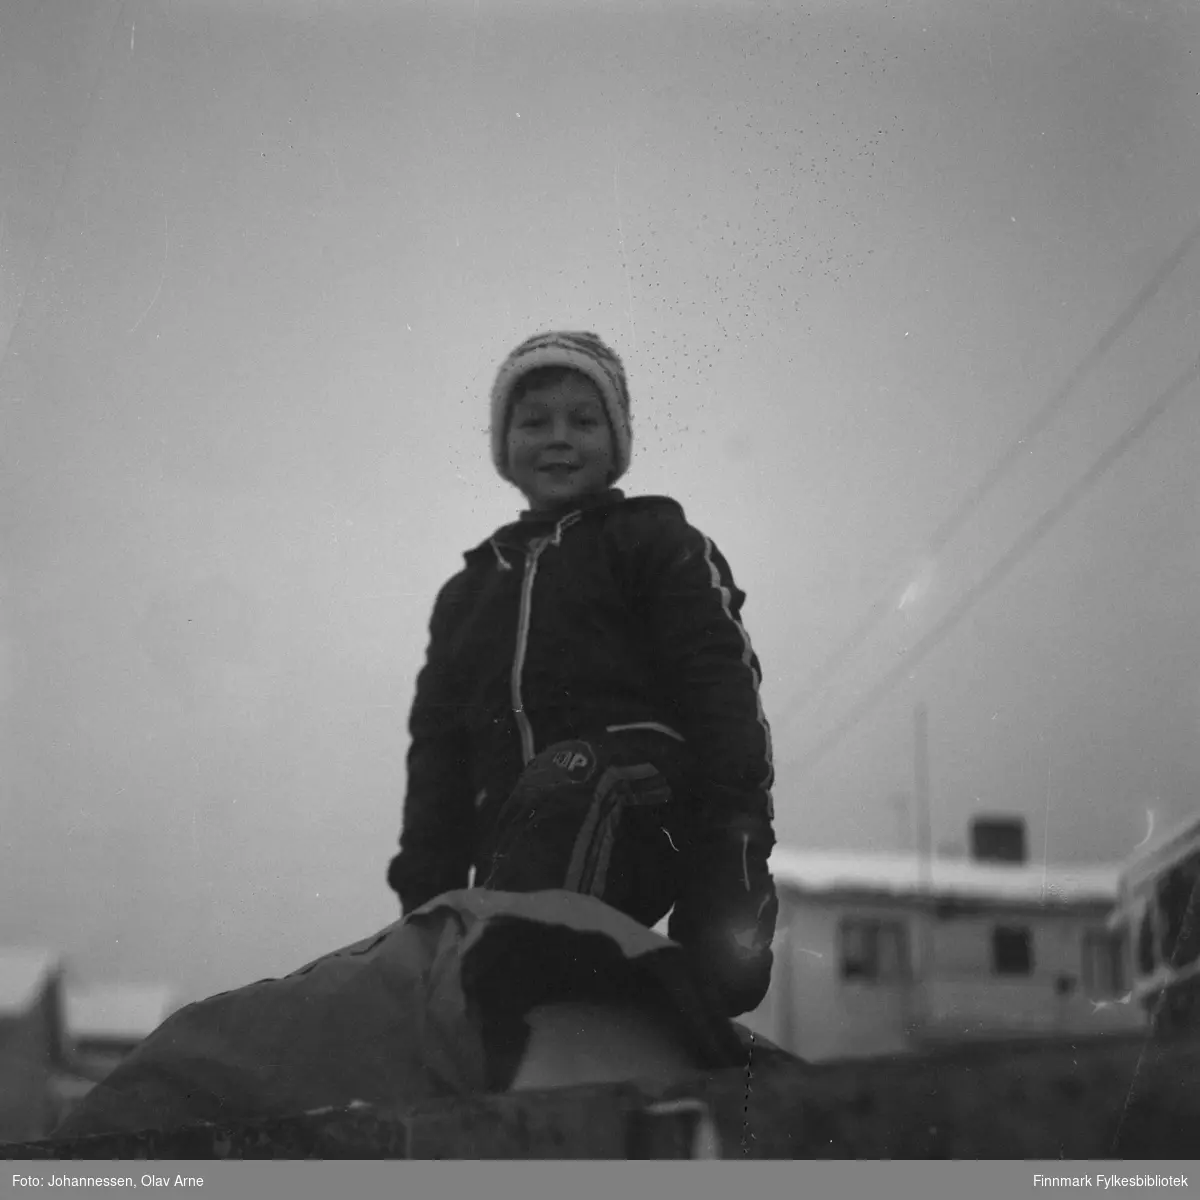 Ukjent barn fotografert på ukjent sted

Foto trolig tatt på tidlig 1970-tallet